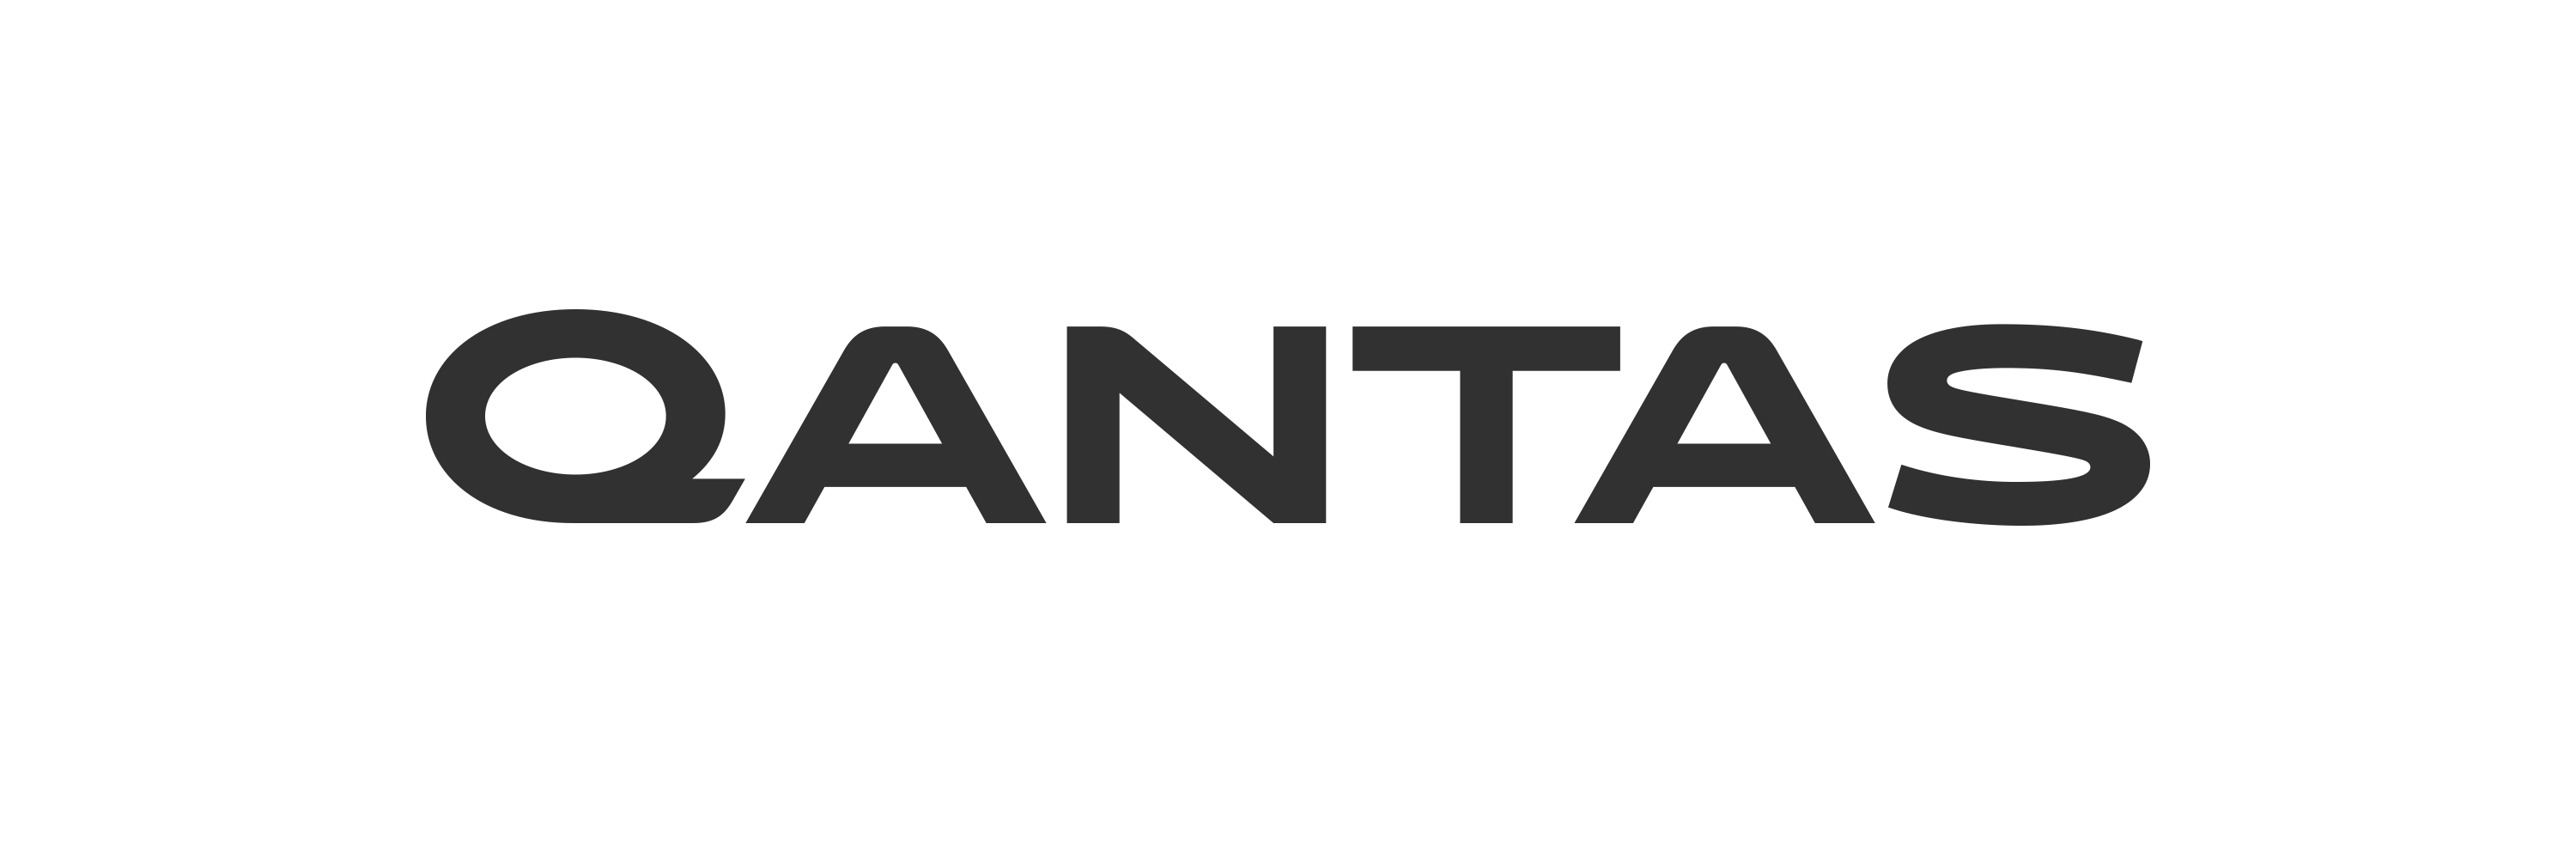 Qantas Logo - Qantas Group — Houston Group